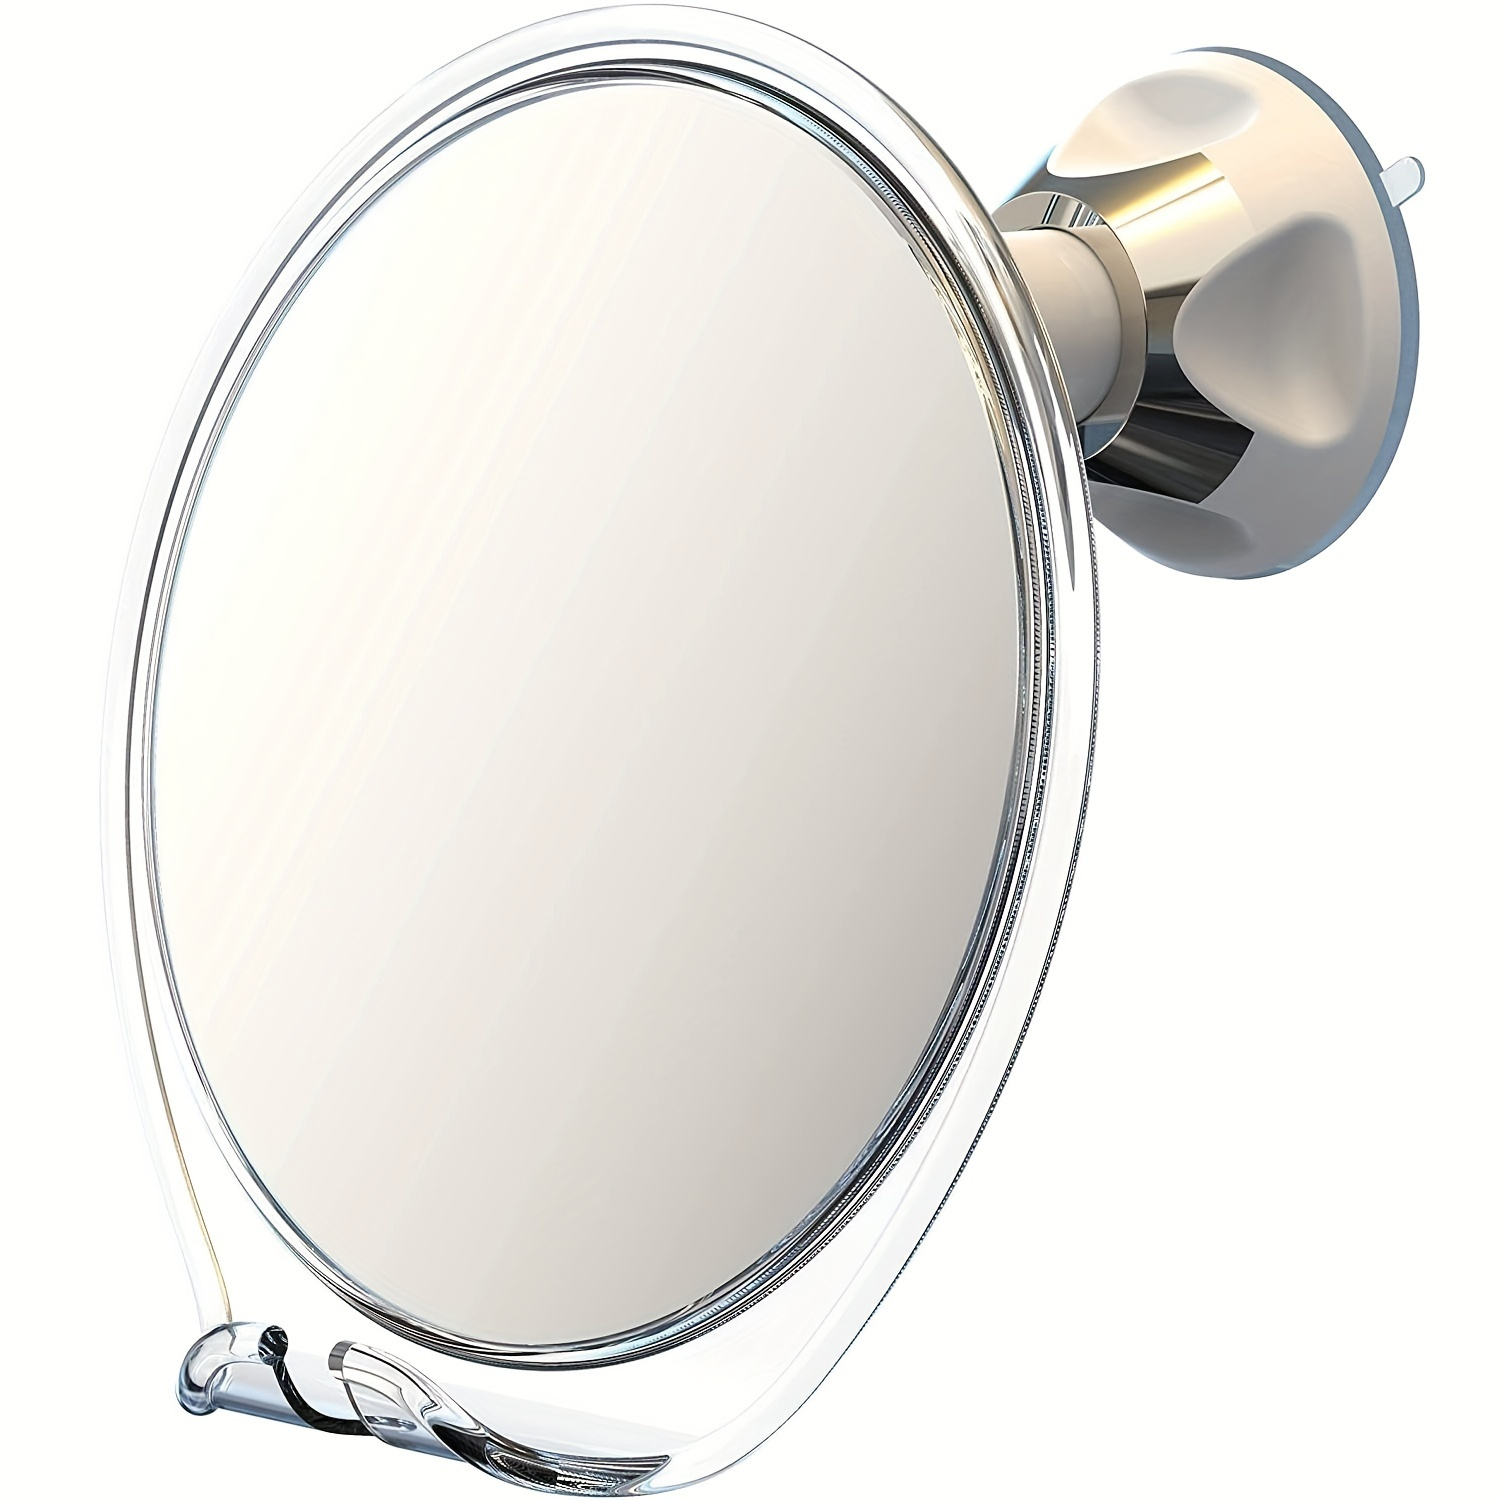 DONGDA Acrílico Espejo de Afeitar de Ducha, Espejo Baño Antivaho Sin Marco,  Espejo para Ducha Irrompible, Portátil Espejo de Viaje Incluye 1 Gancho  Adhesivo, Espejo Colgante pequeño 25cm x 20cm : 